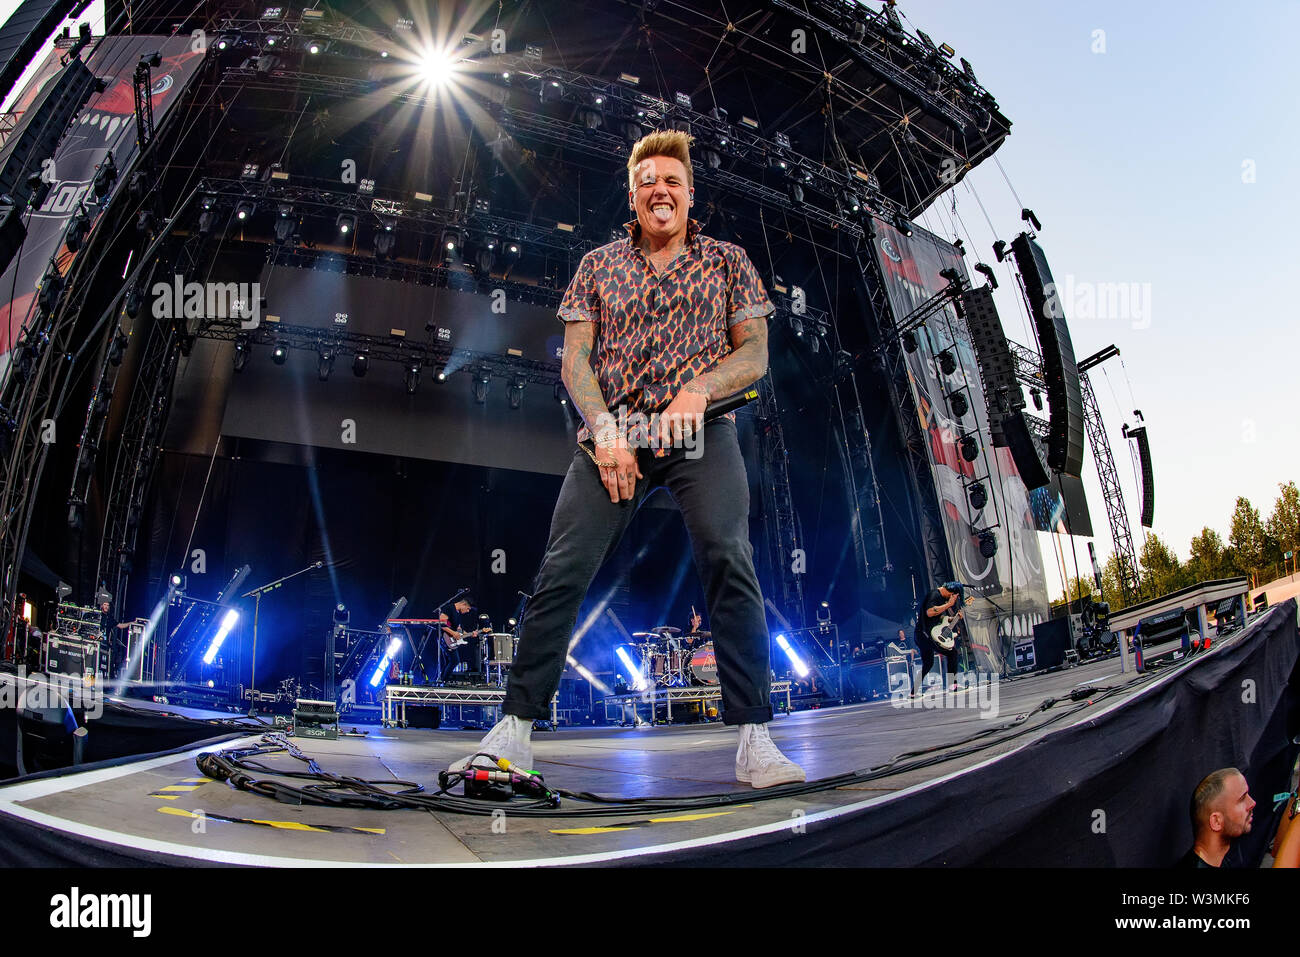 MADRID - 28 juin : Papa Roach (band) produisent en concert à télécharger (heavy metal music festival) Le 28 juin 2019 à Madrid, Espagne. Banque D'Images